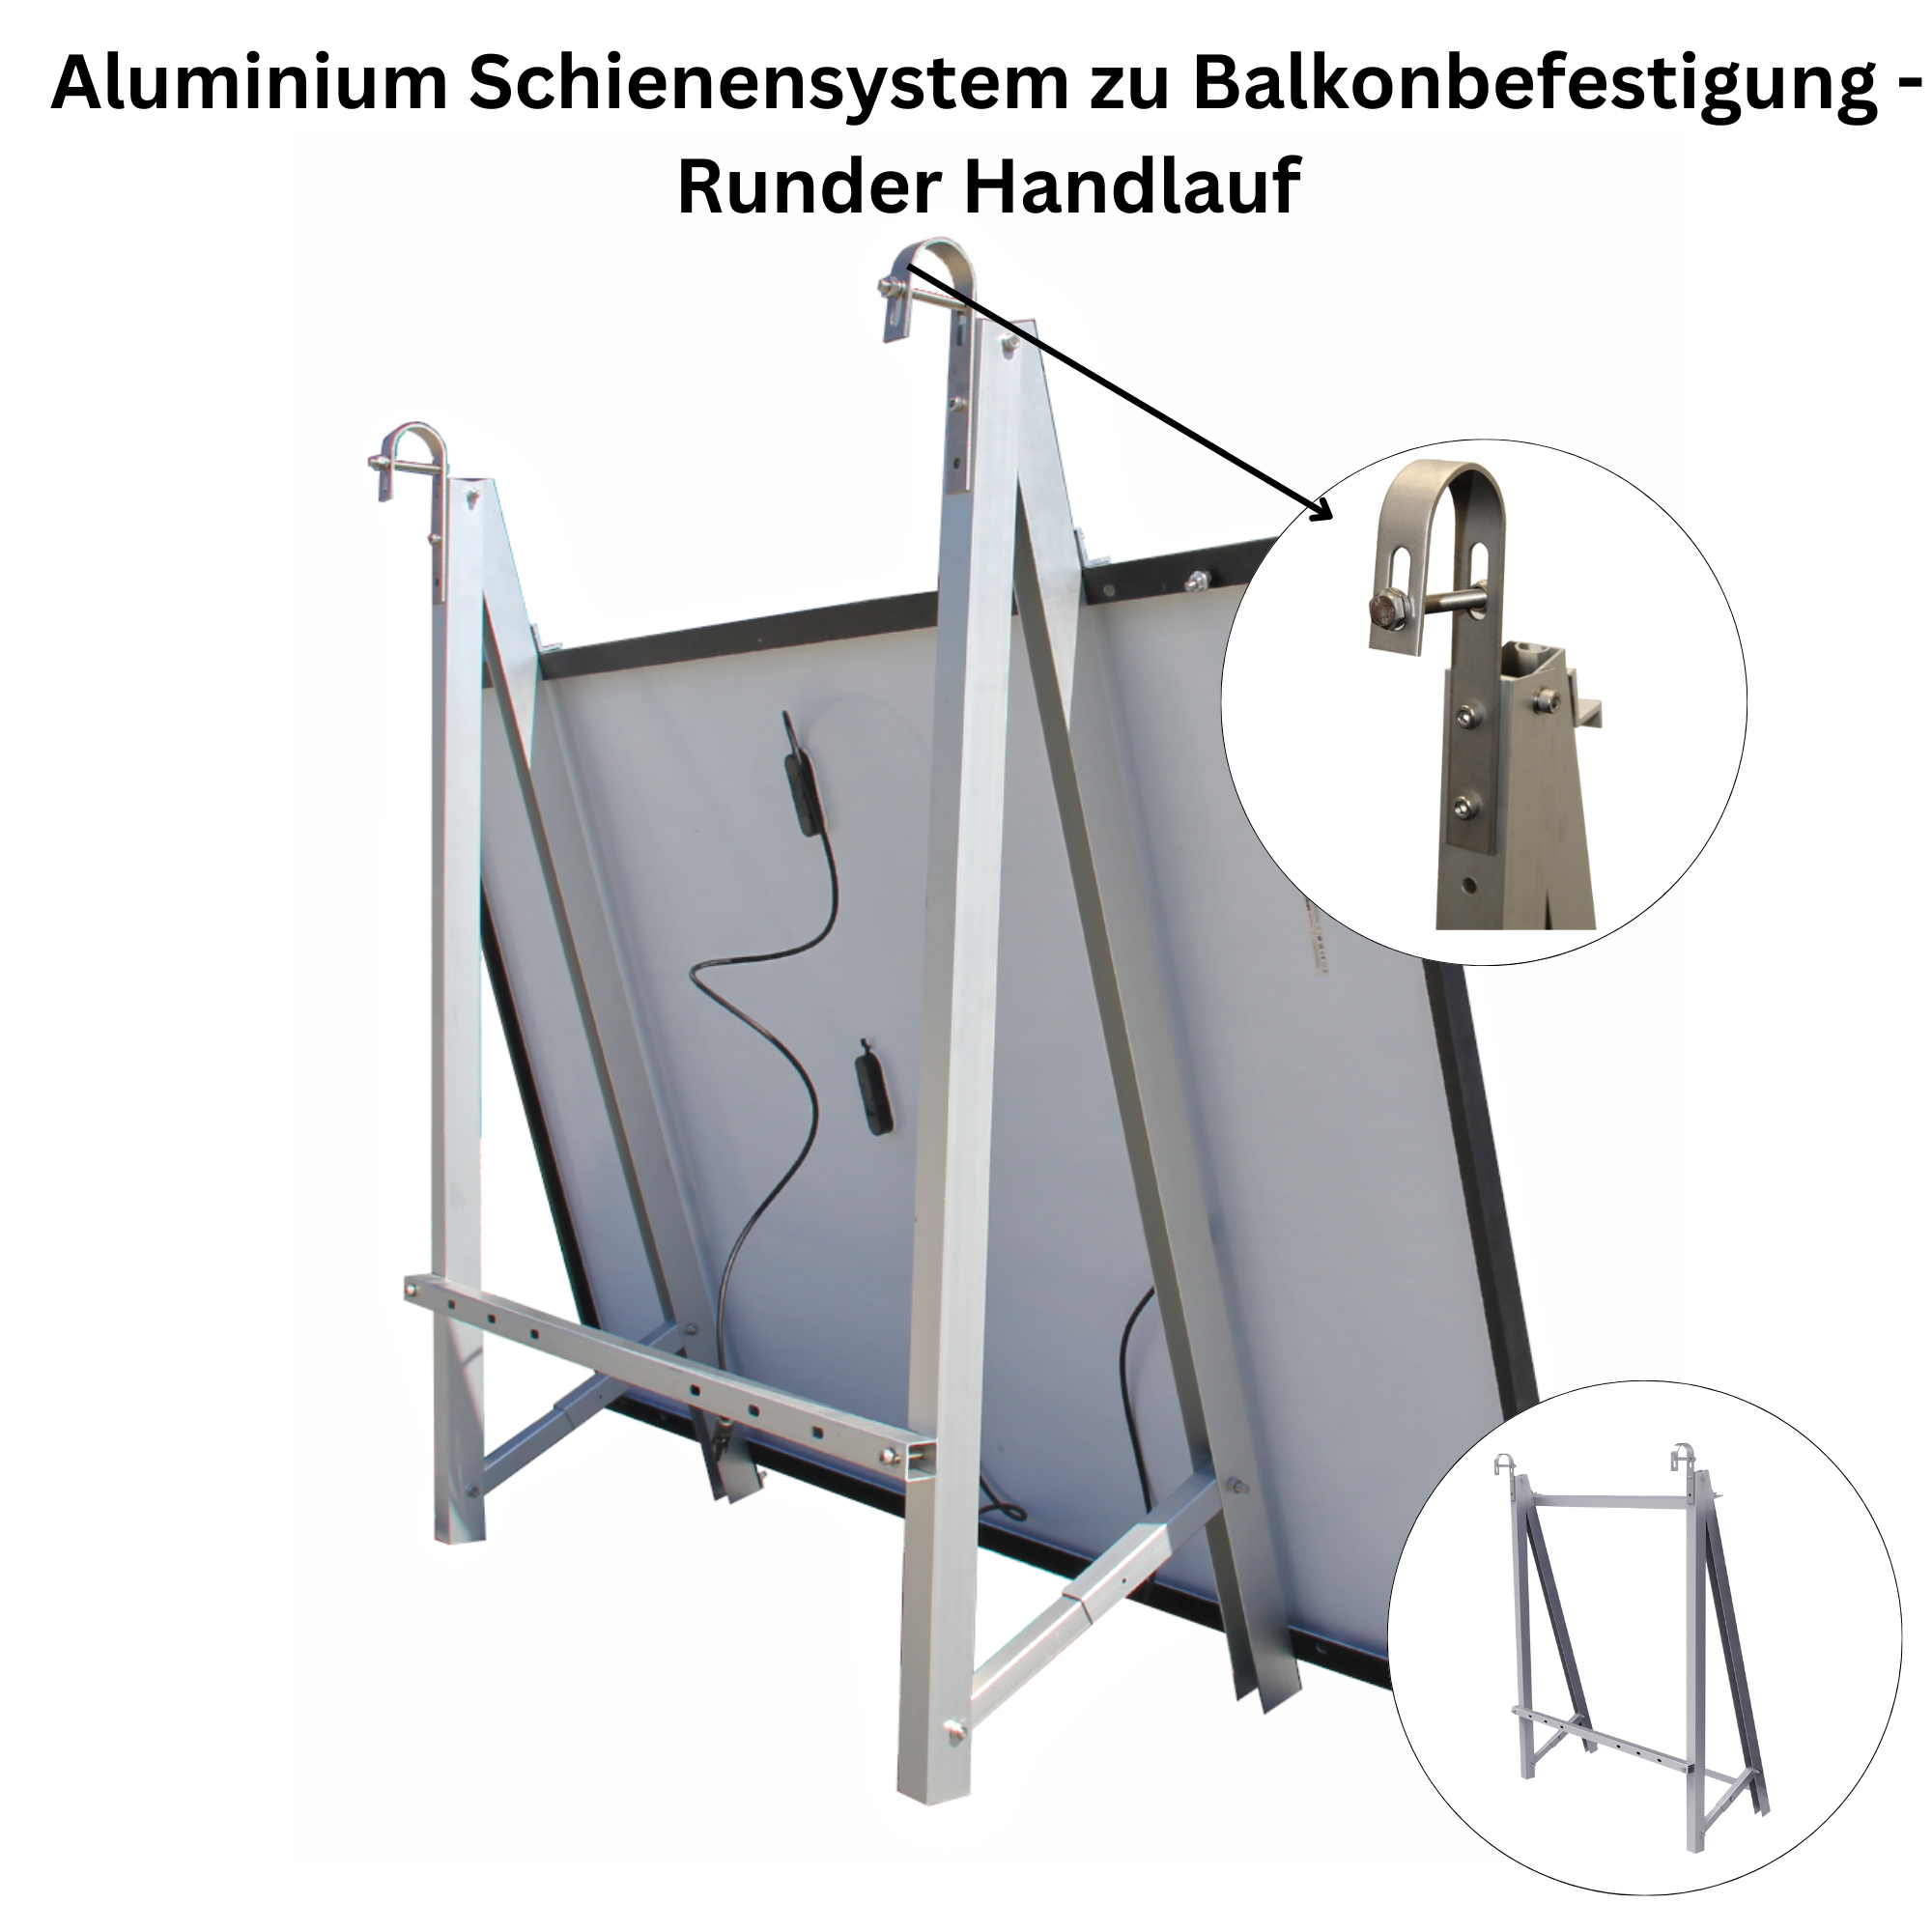 Aluminium Schienensystem zu Balkonbefestigung- Runder Handlauf